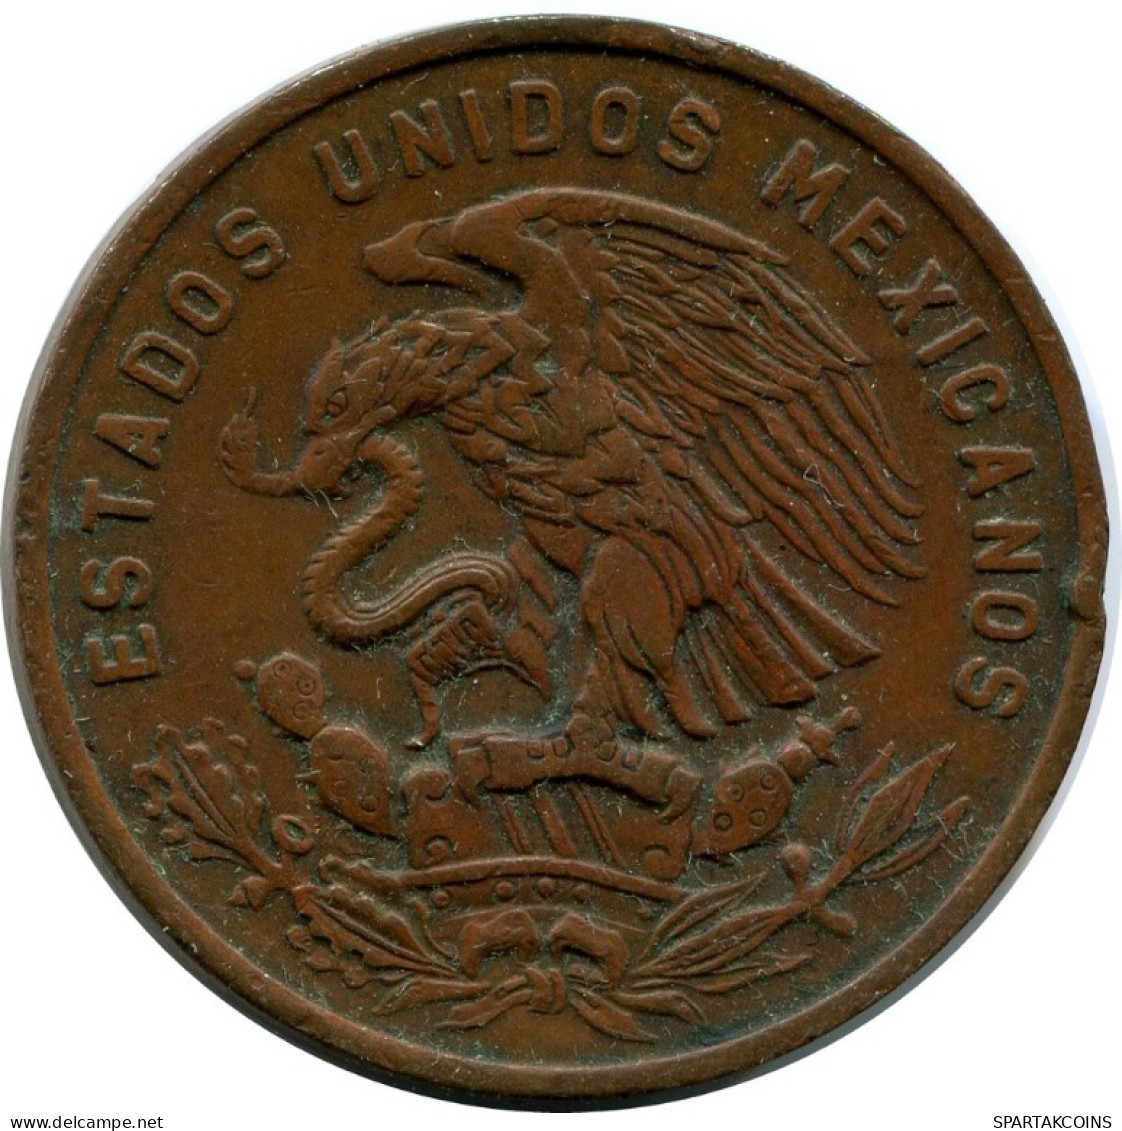 20 CENTAVOS 1969 MEXICO Coin #AH533.5.U.A - Mexico